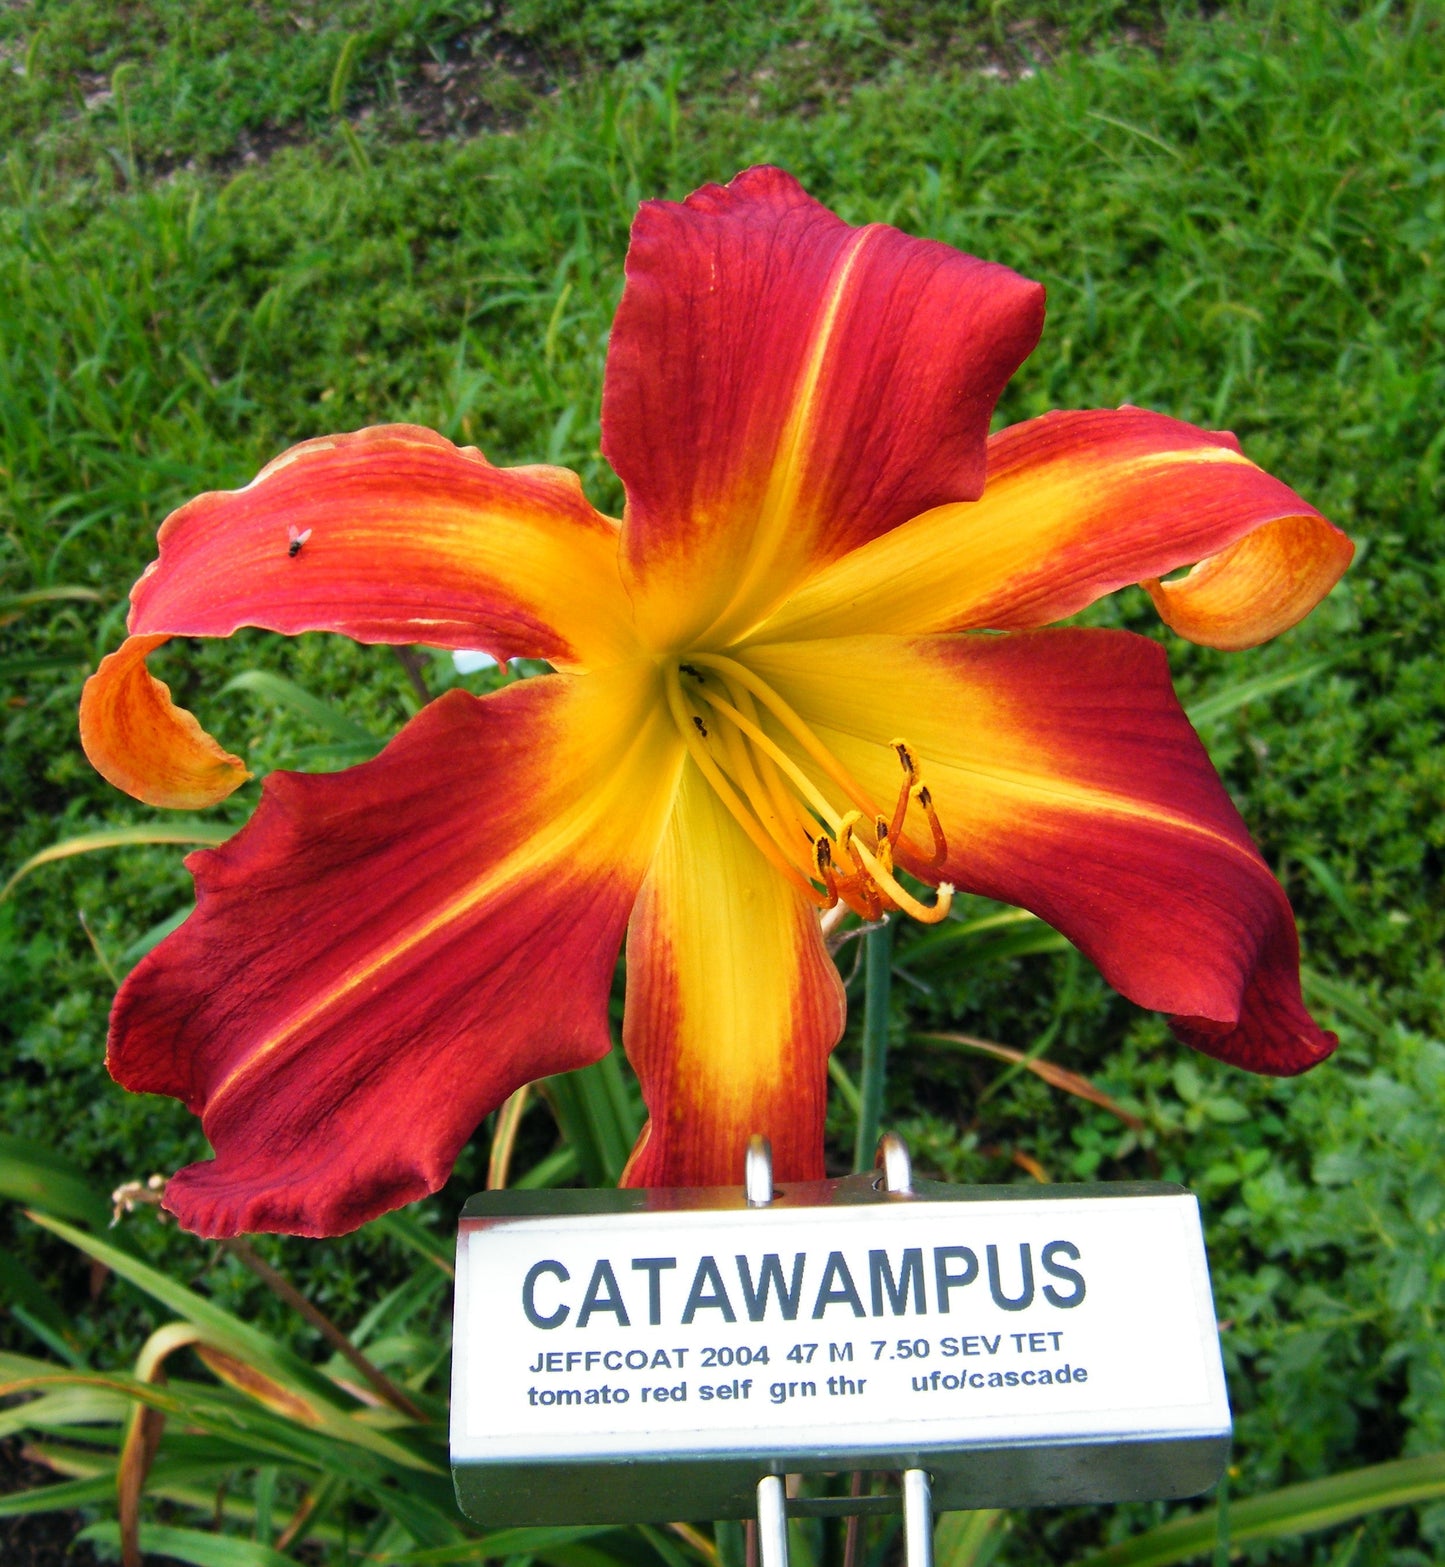 CATAWAMPUS